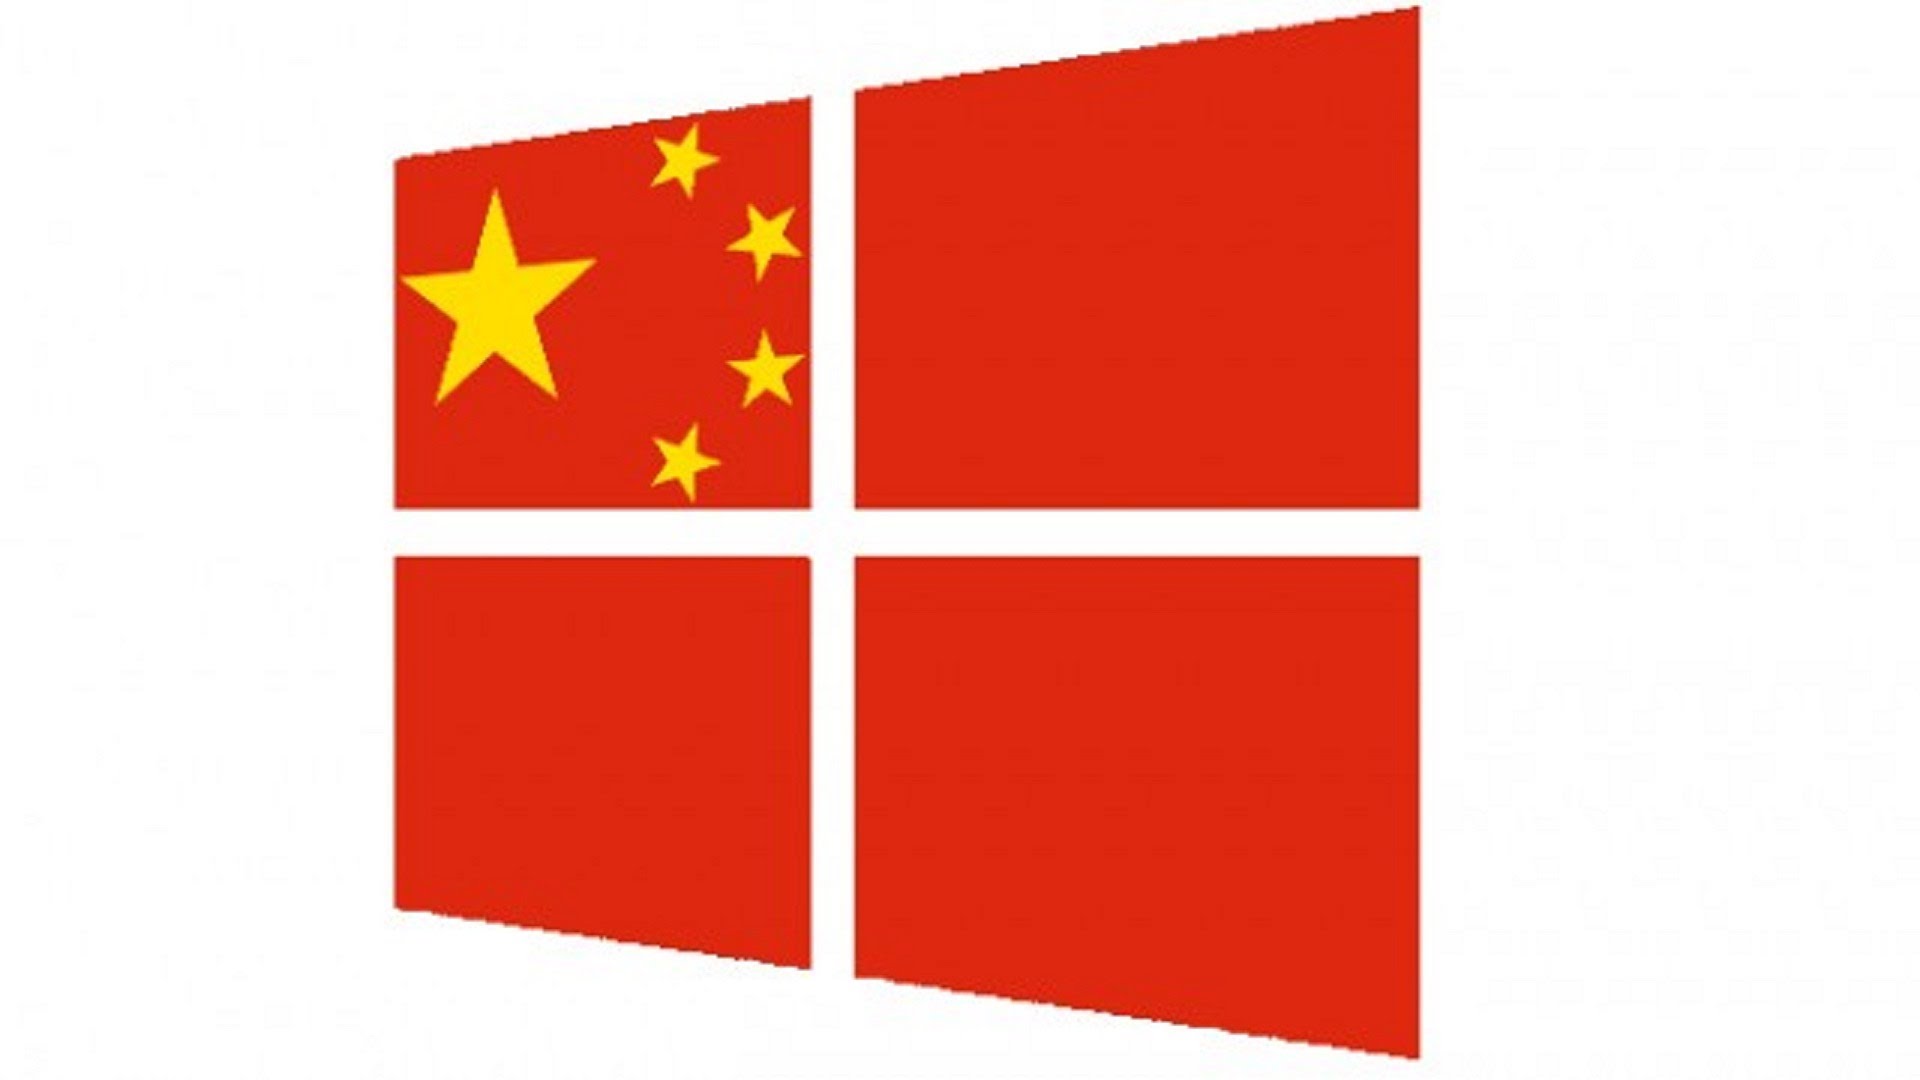 China Bans Windows 8